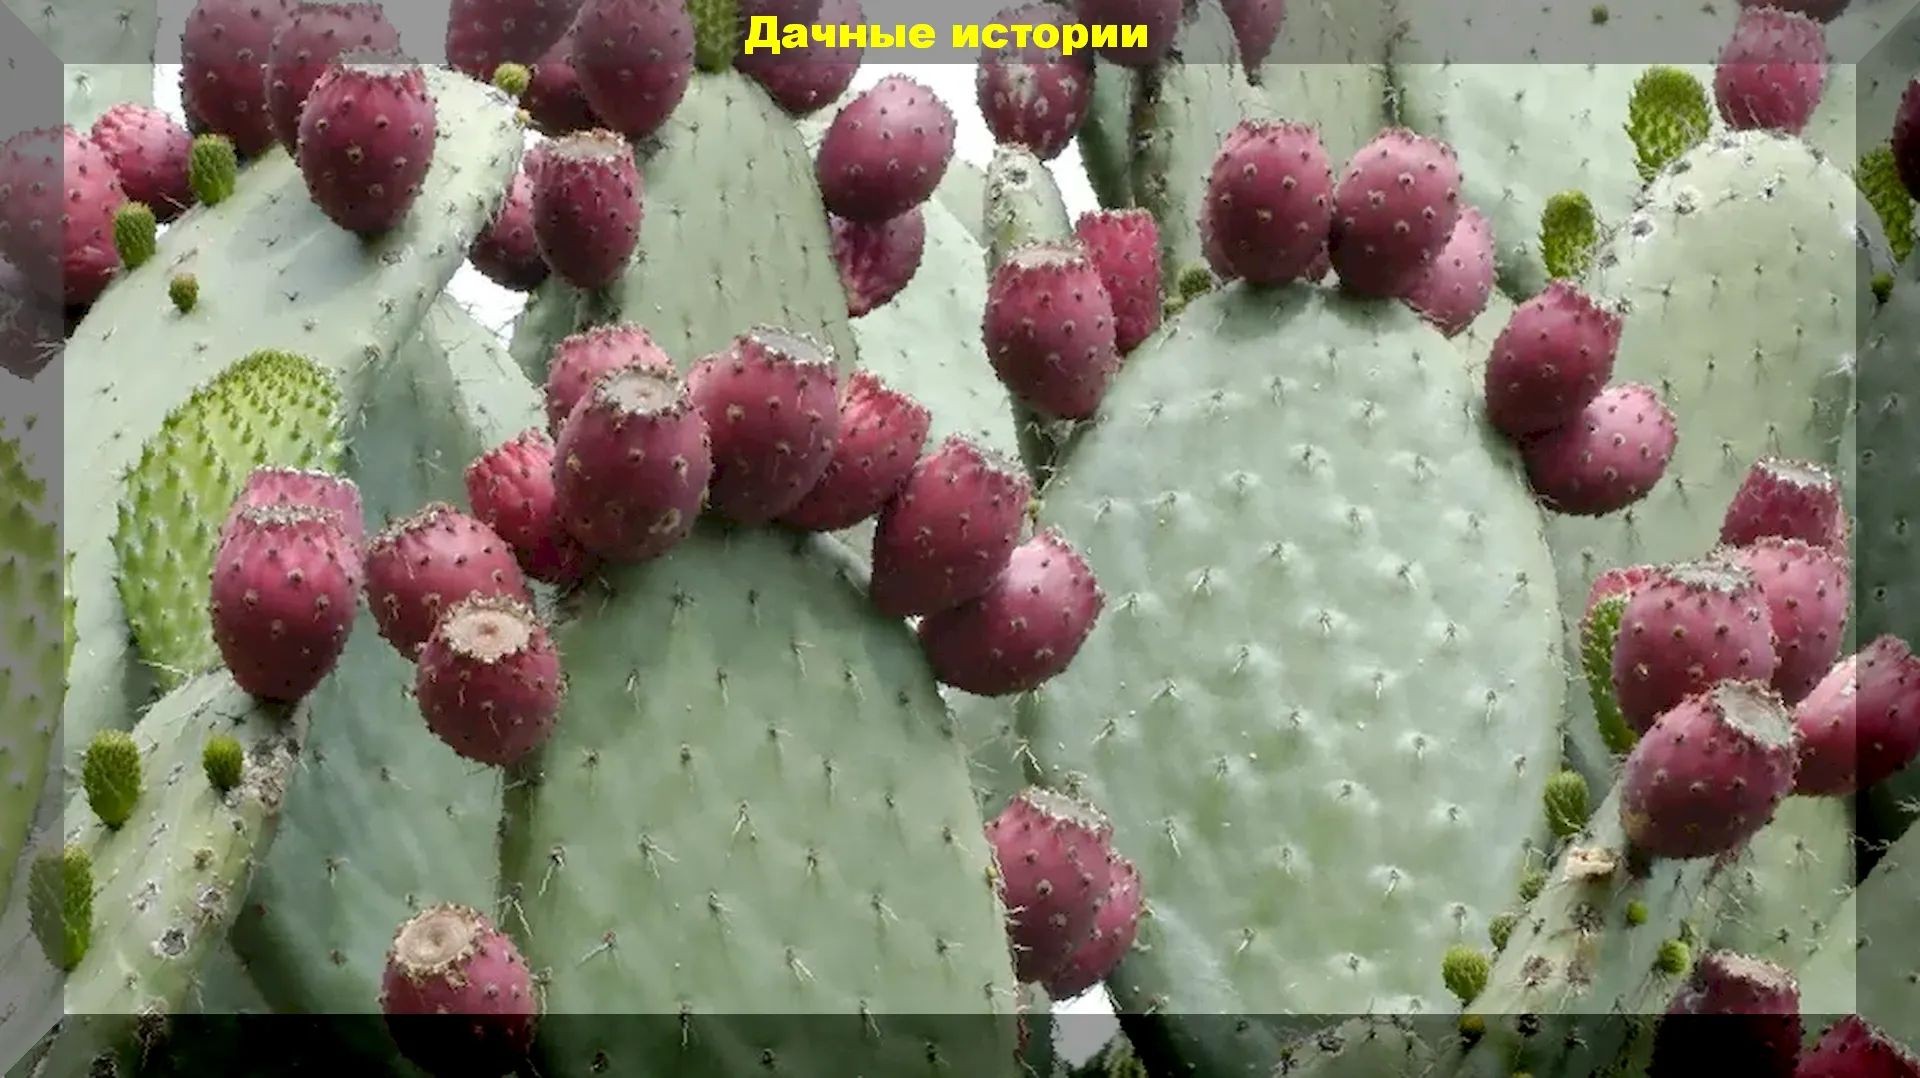 Кактус "Опунция", который может расти в средней полосе России, в открытом грунте